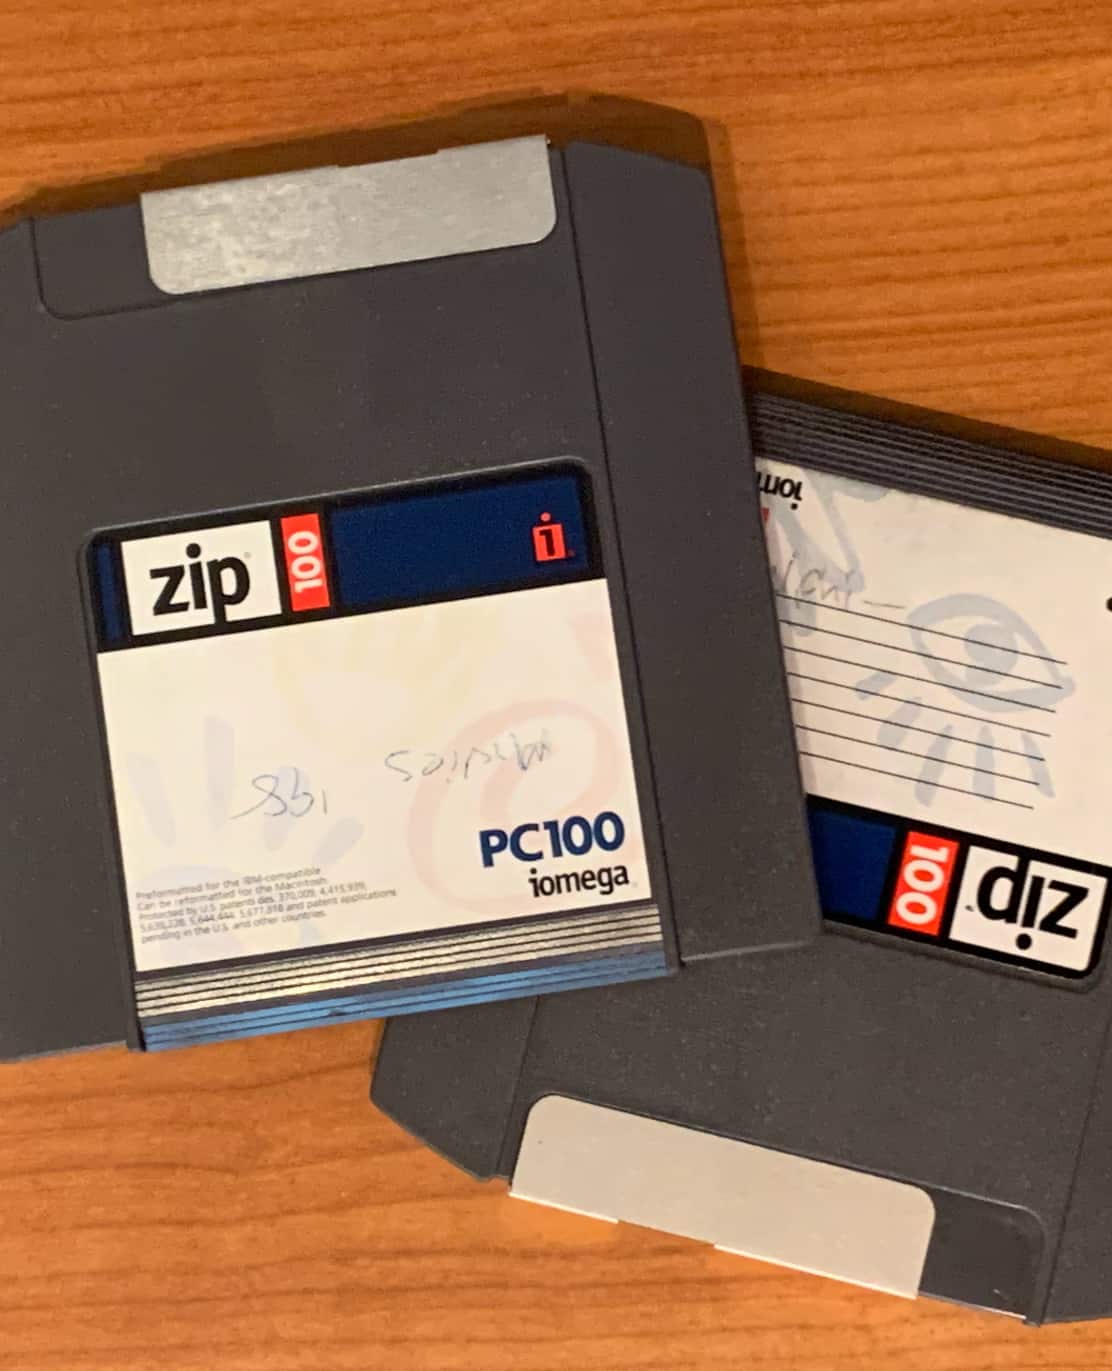 Zip Disk Mobile